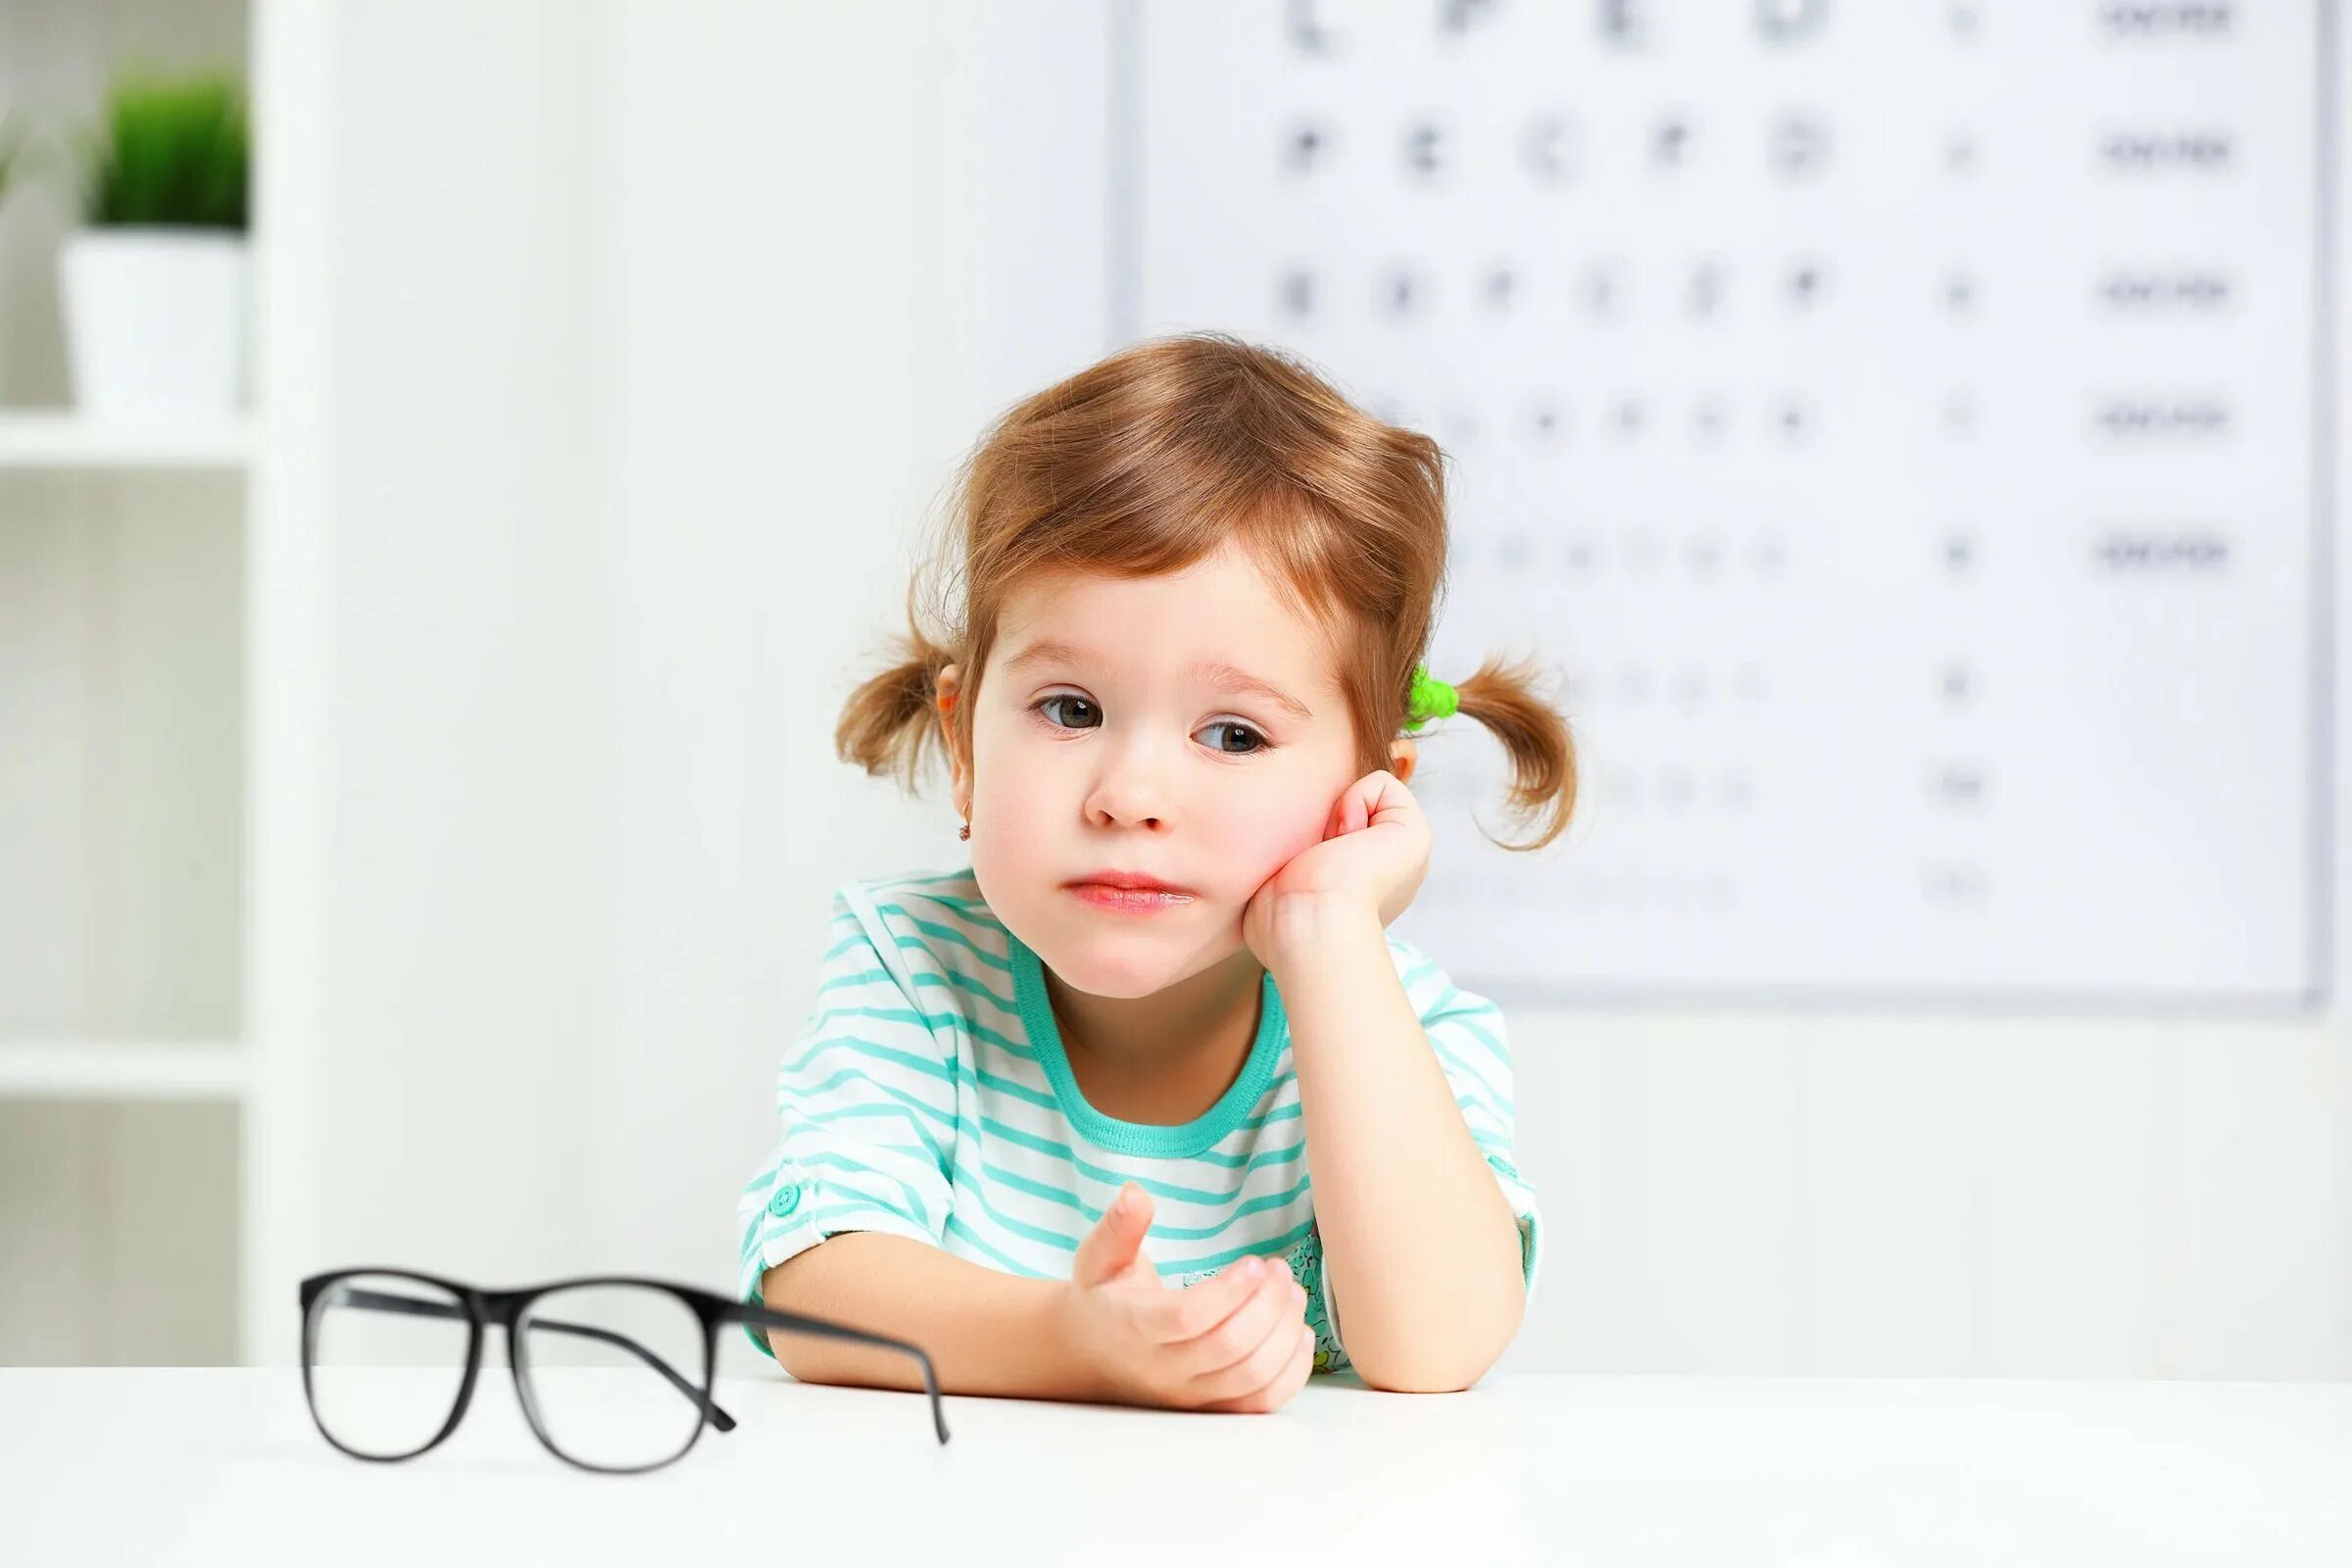 Аналитическое зрение. Дети с нарушением зрения. Нарущения зренря умдетей. Зрение у детей. Дети с плохим зрением.